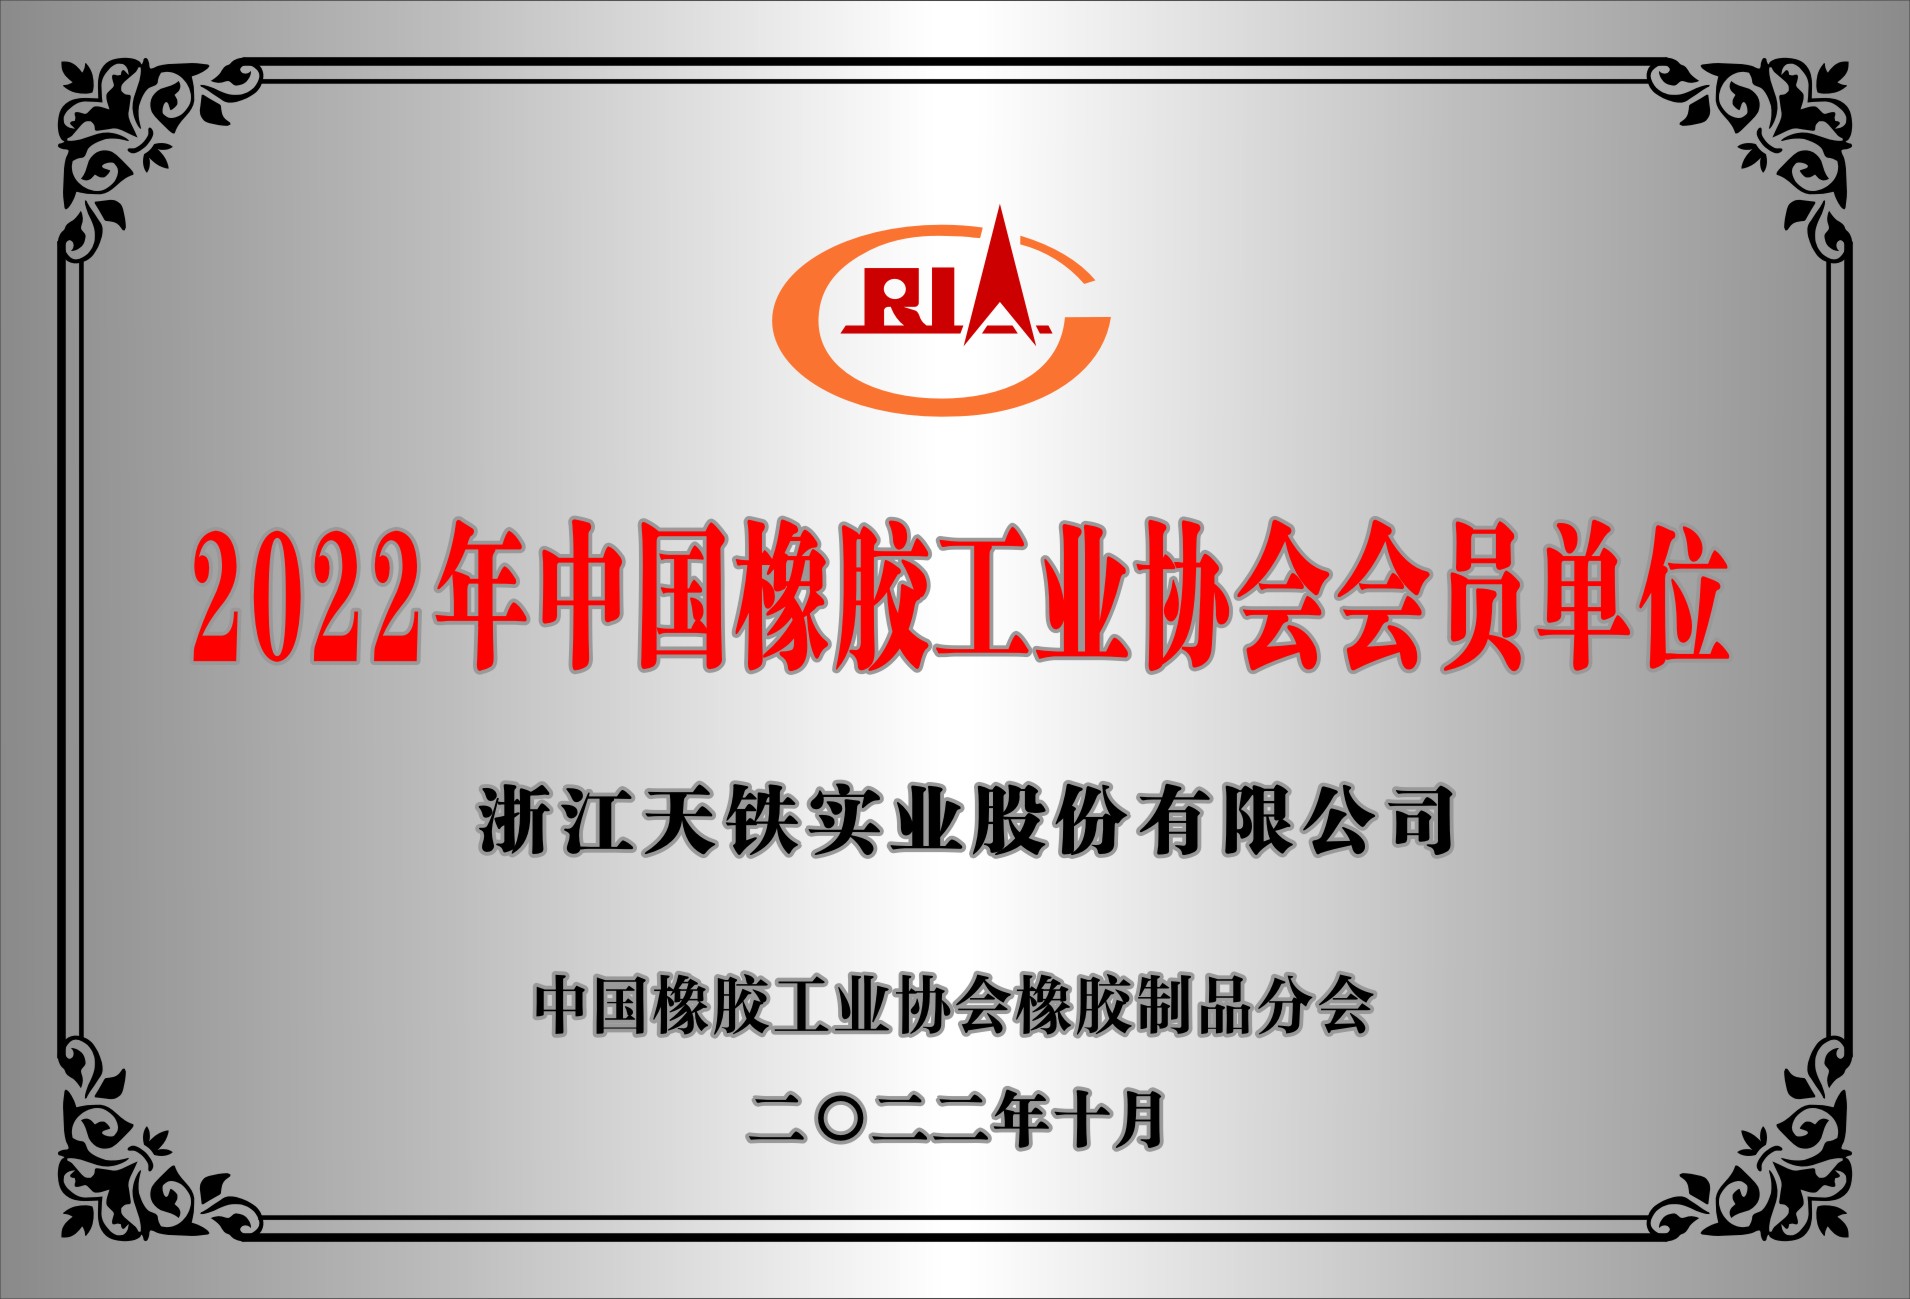 会员证书 中国橡胶工业协会 2022